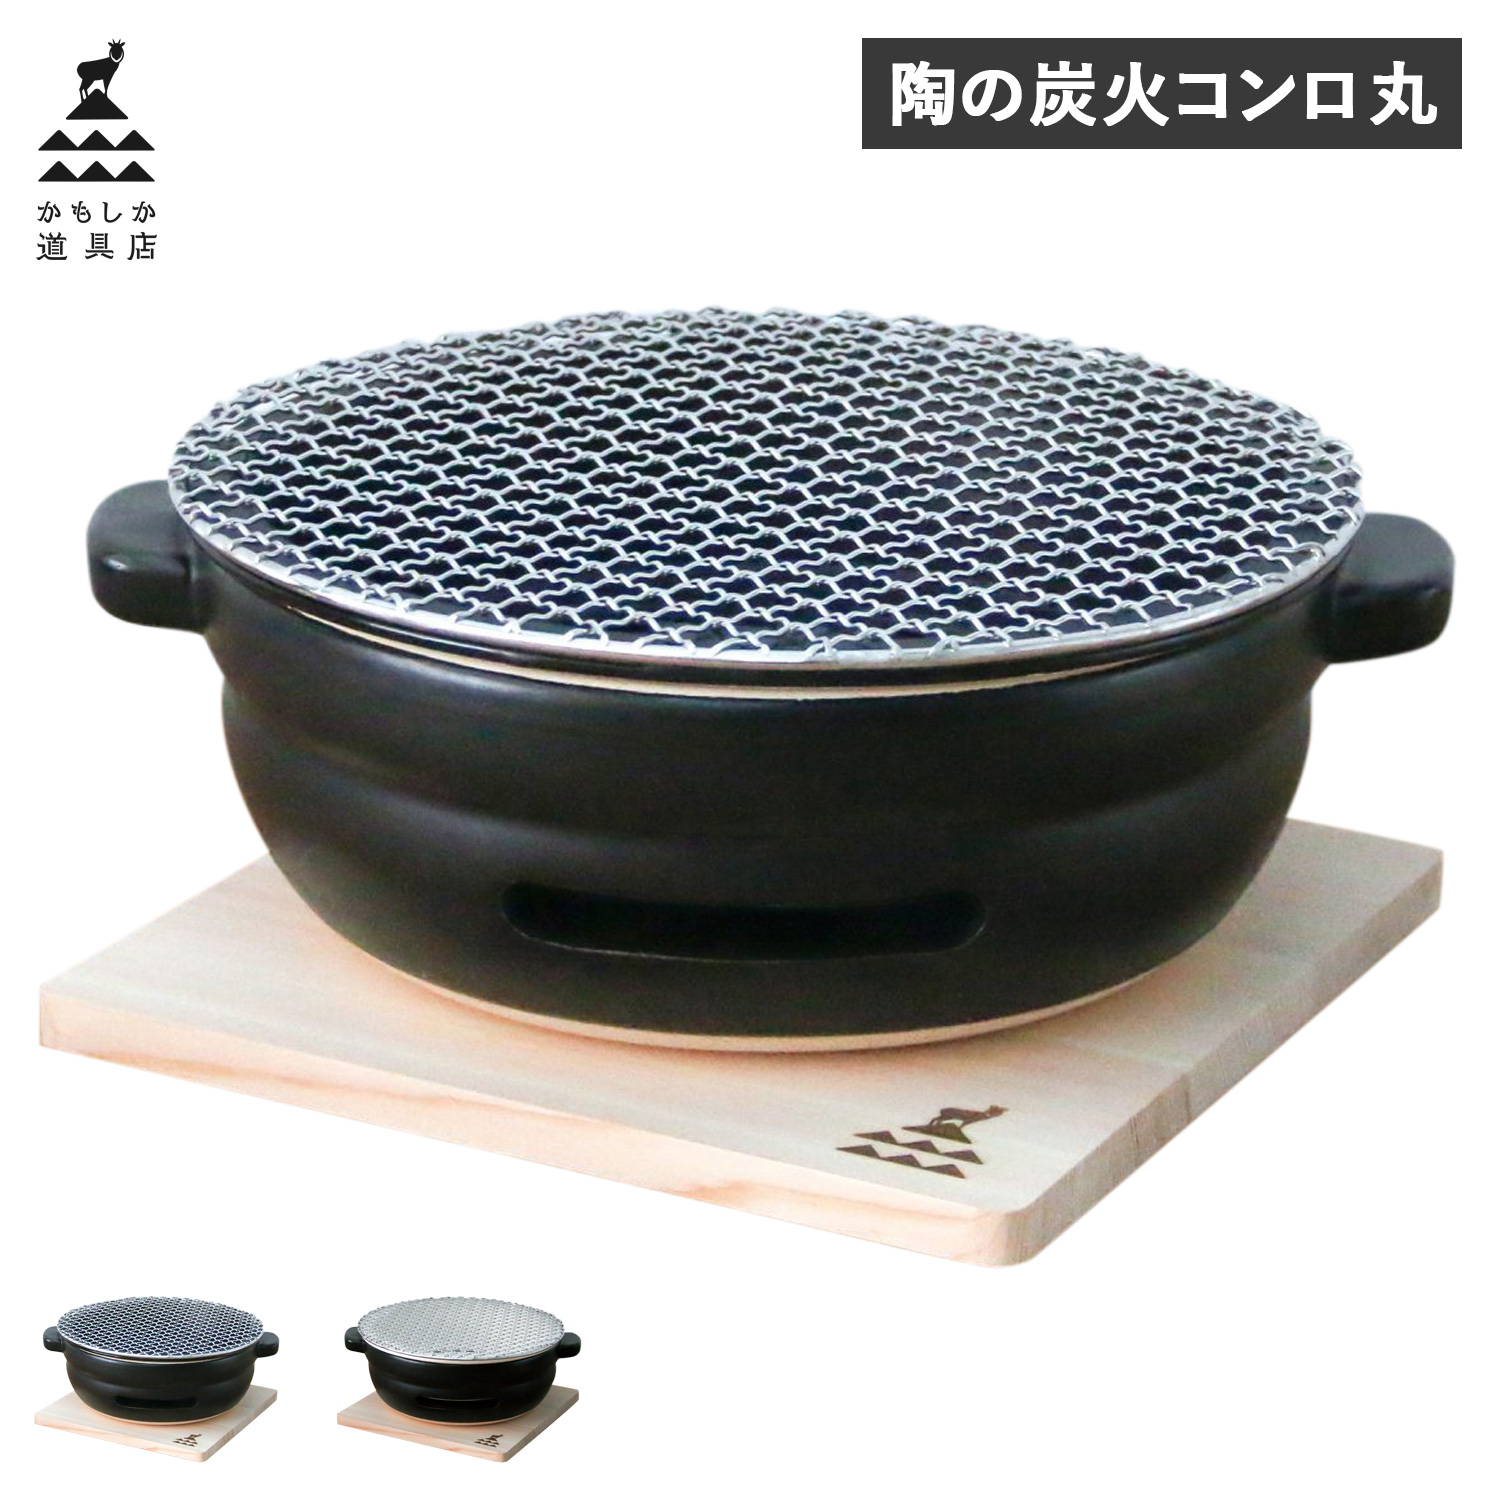 人気ブランド かもしか道具店 卓上コンロ 陶器 陶の炭火コンロ 角 小型 コンパクト 日本製